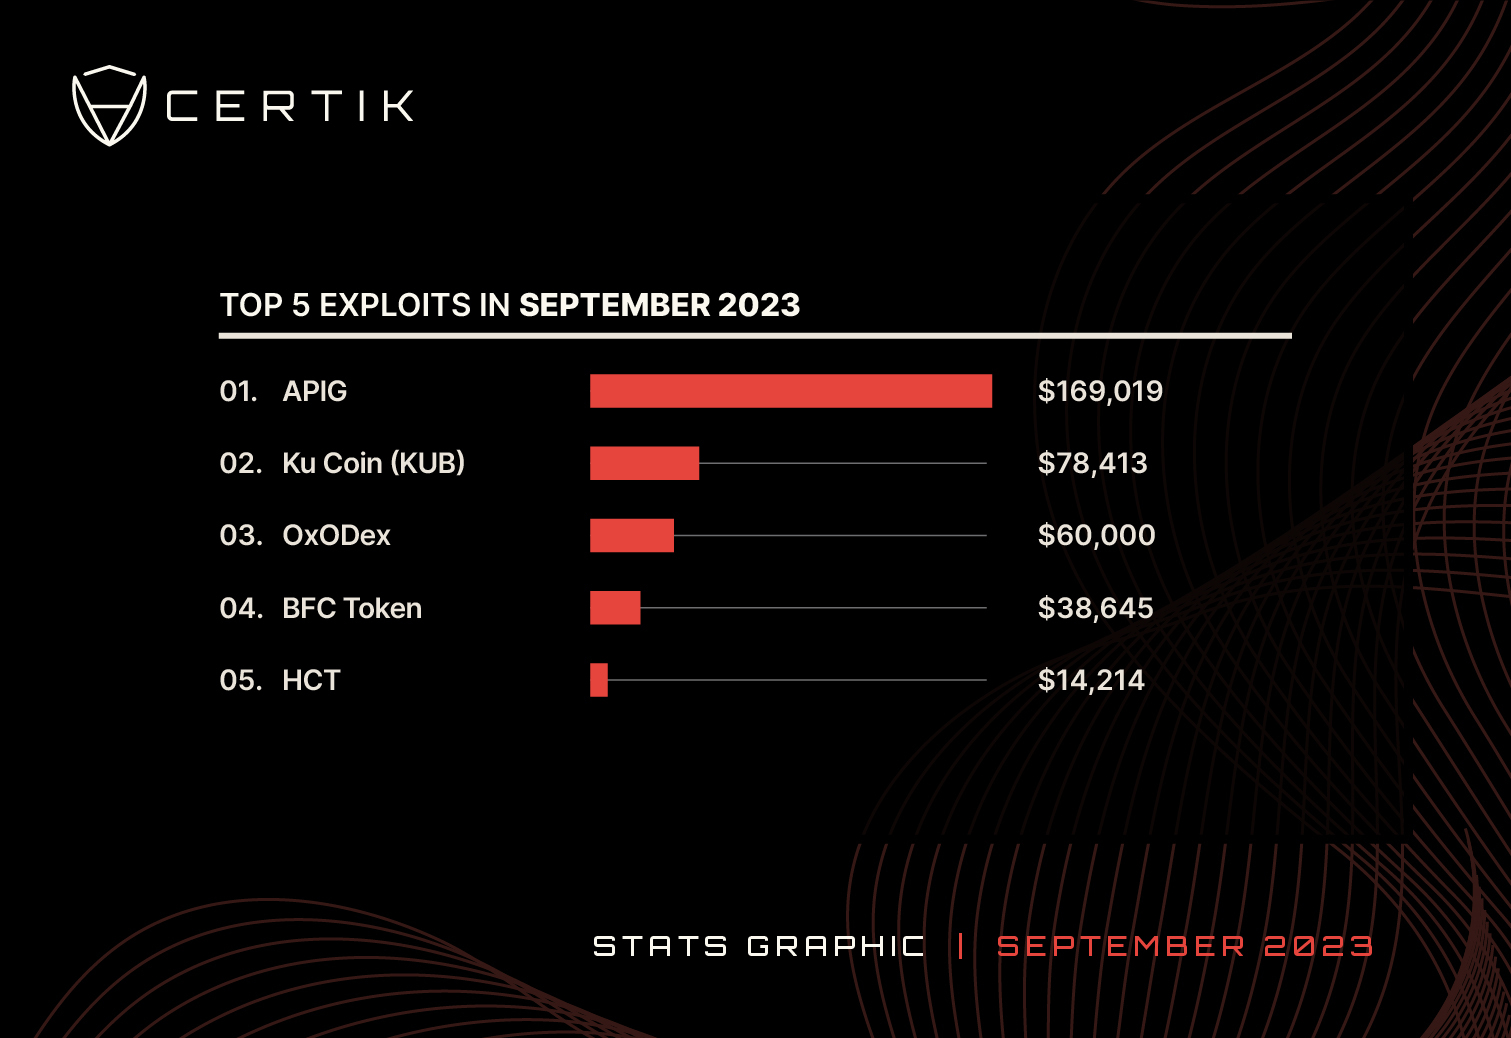 2023-Top 5 exploit-September